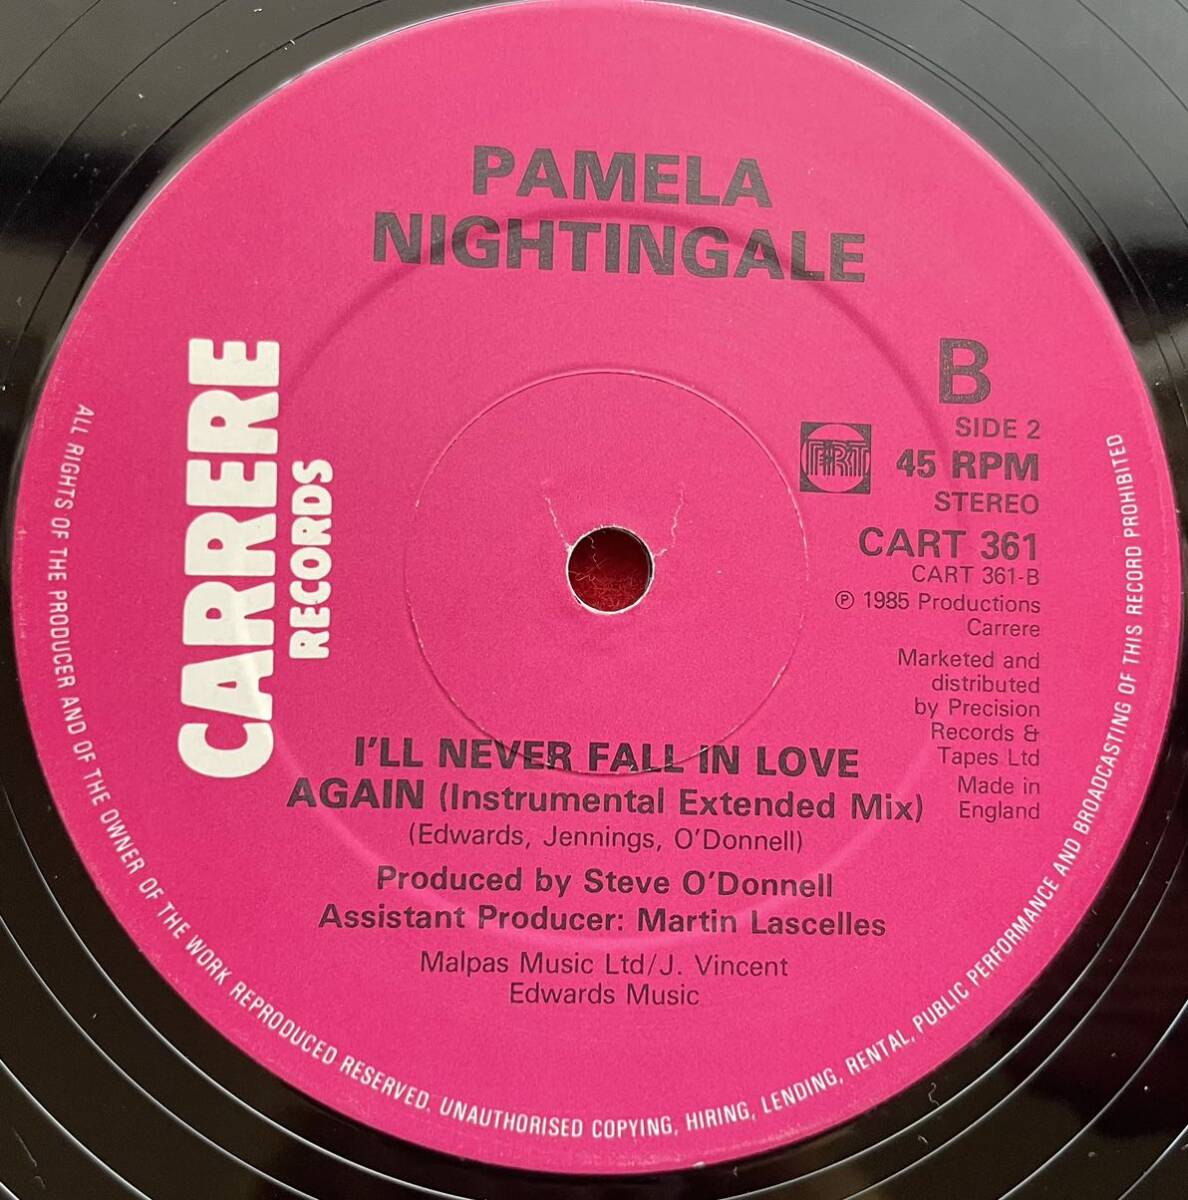 パメラ・ナイチンゲール / I'll Never Fall in Love Again オリジナル12inch盤その他にもプロモーション盤 レア盤 人気レコード 多数出品。の画像2